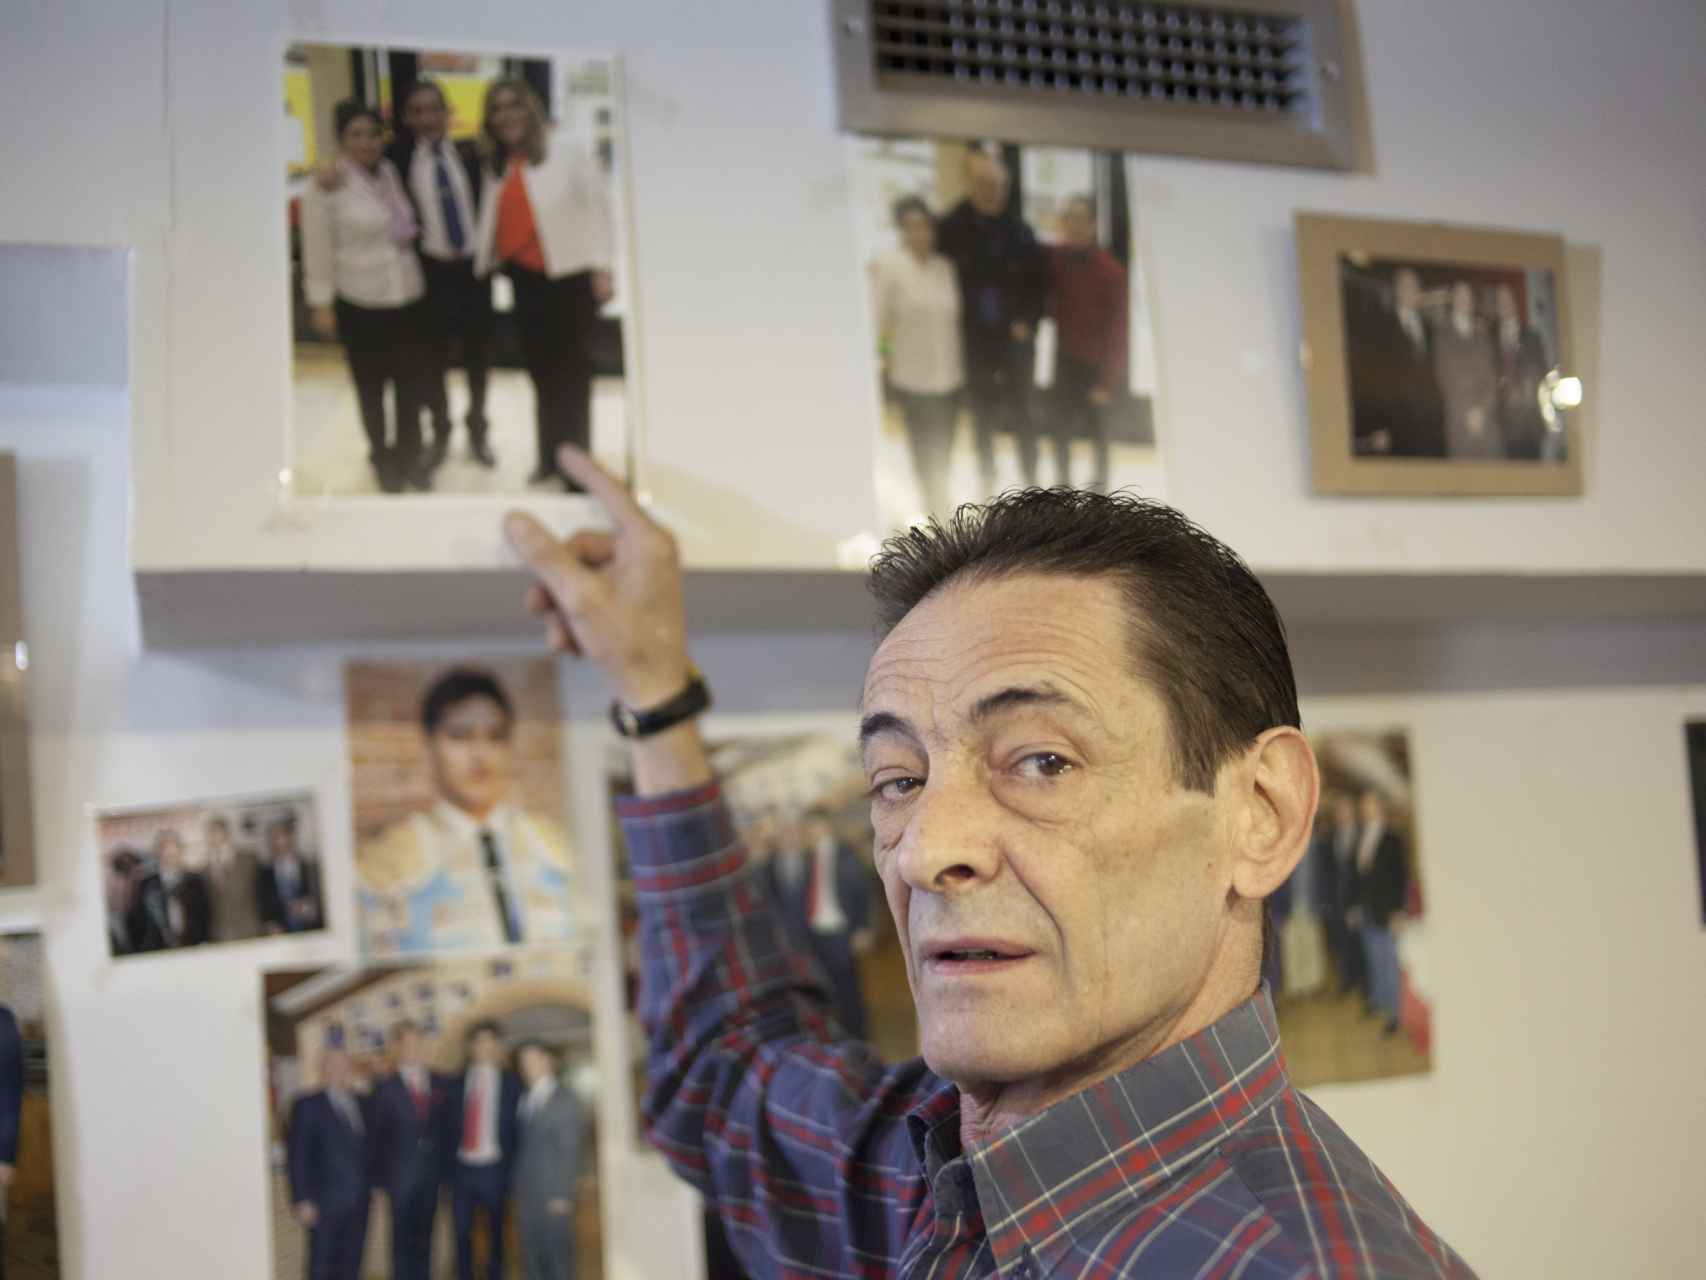 Ramón Aparicio señalando su foto con Susana Diaz, colgada en la pared de la taberna.